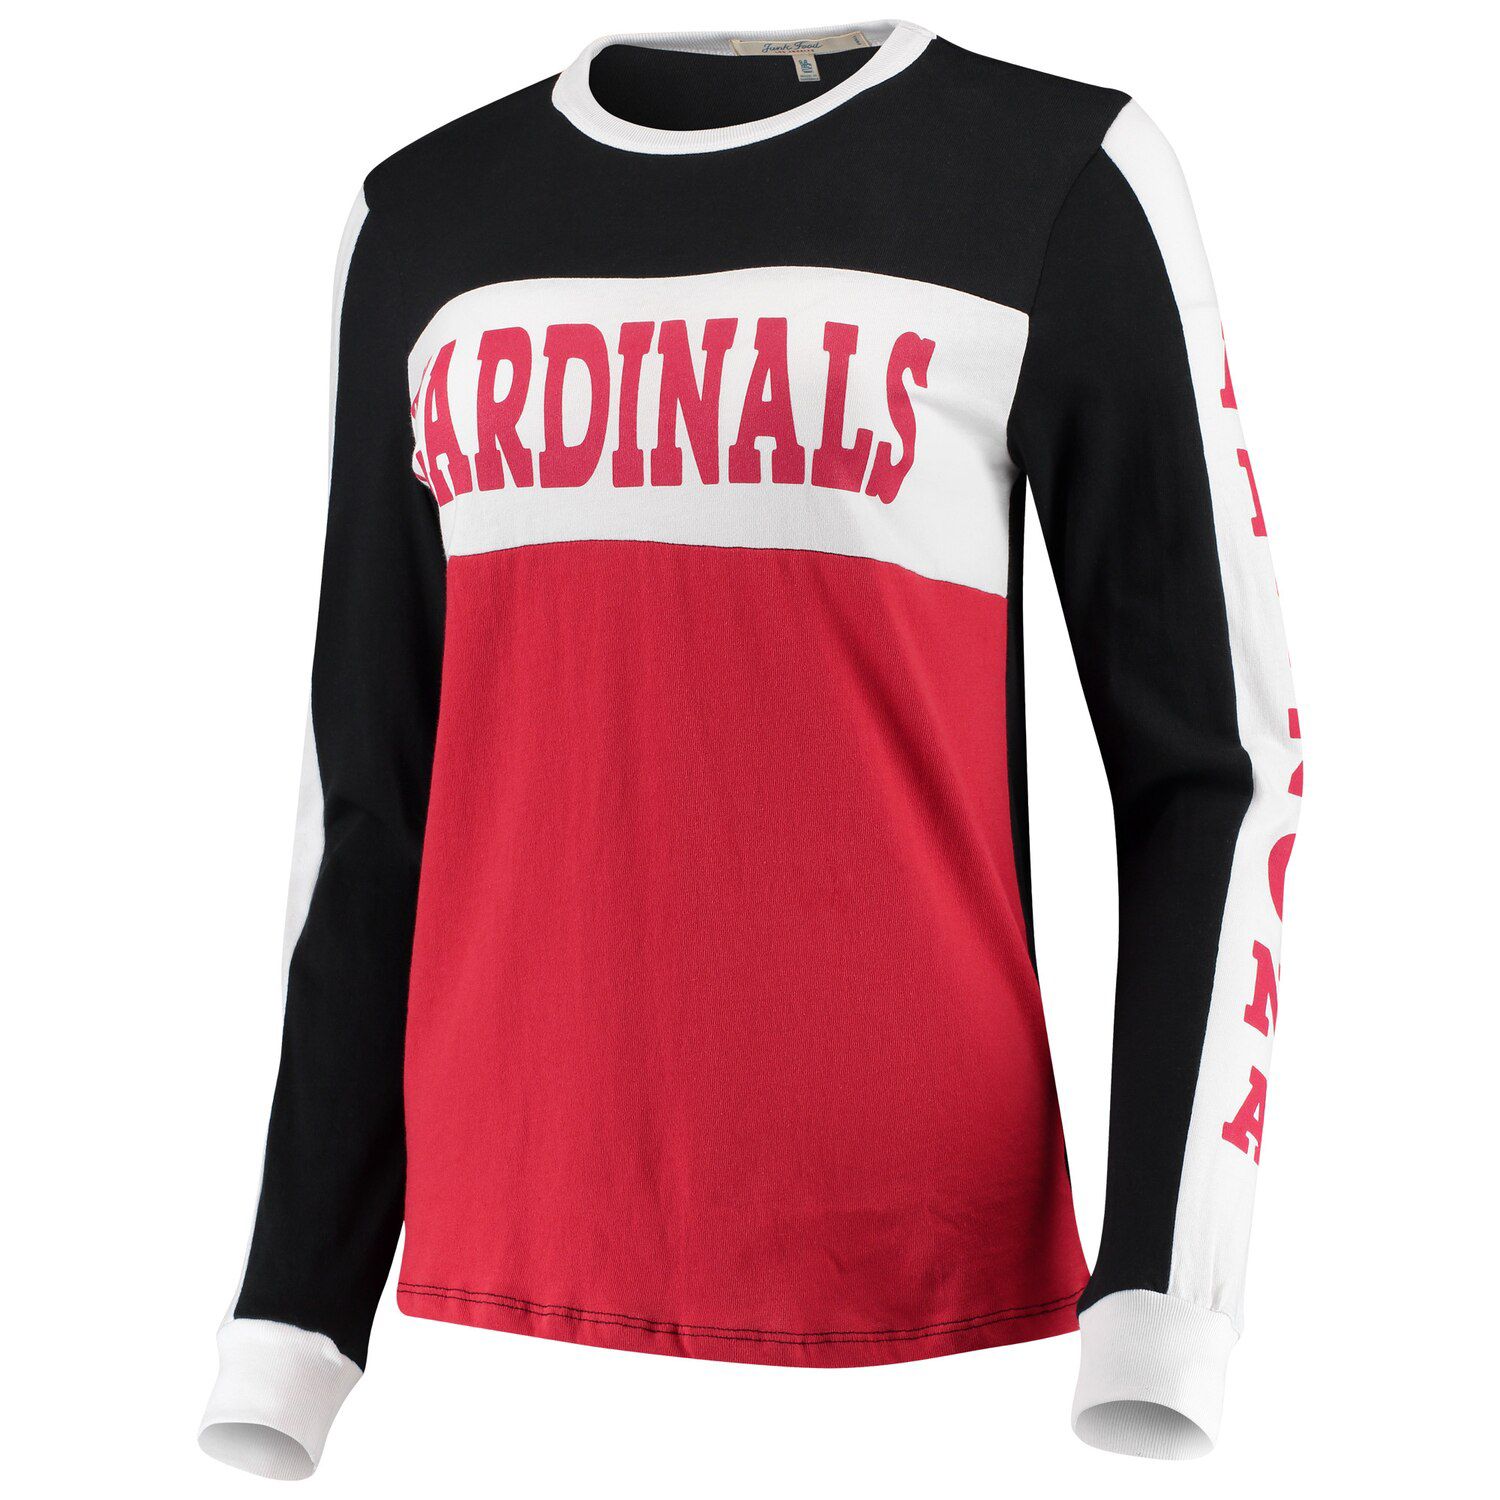 womens black cardinals jersey